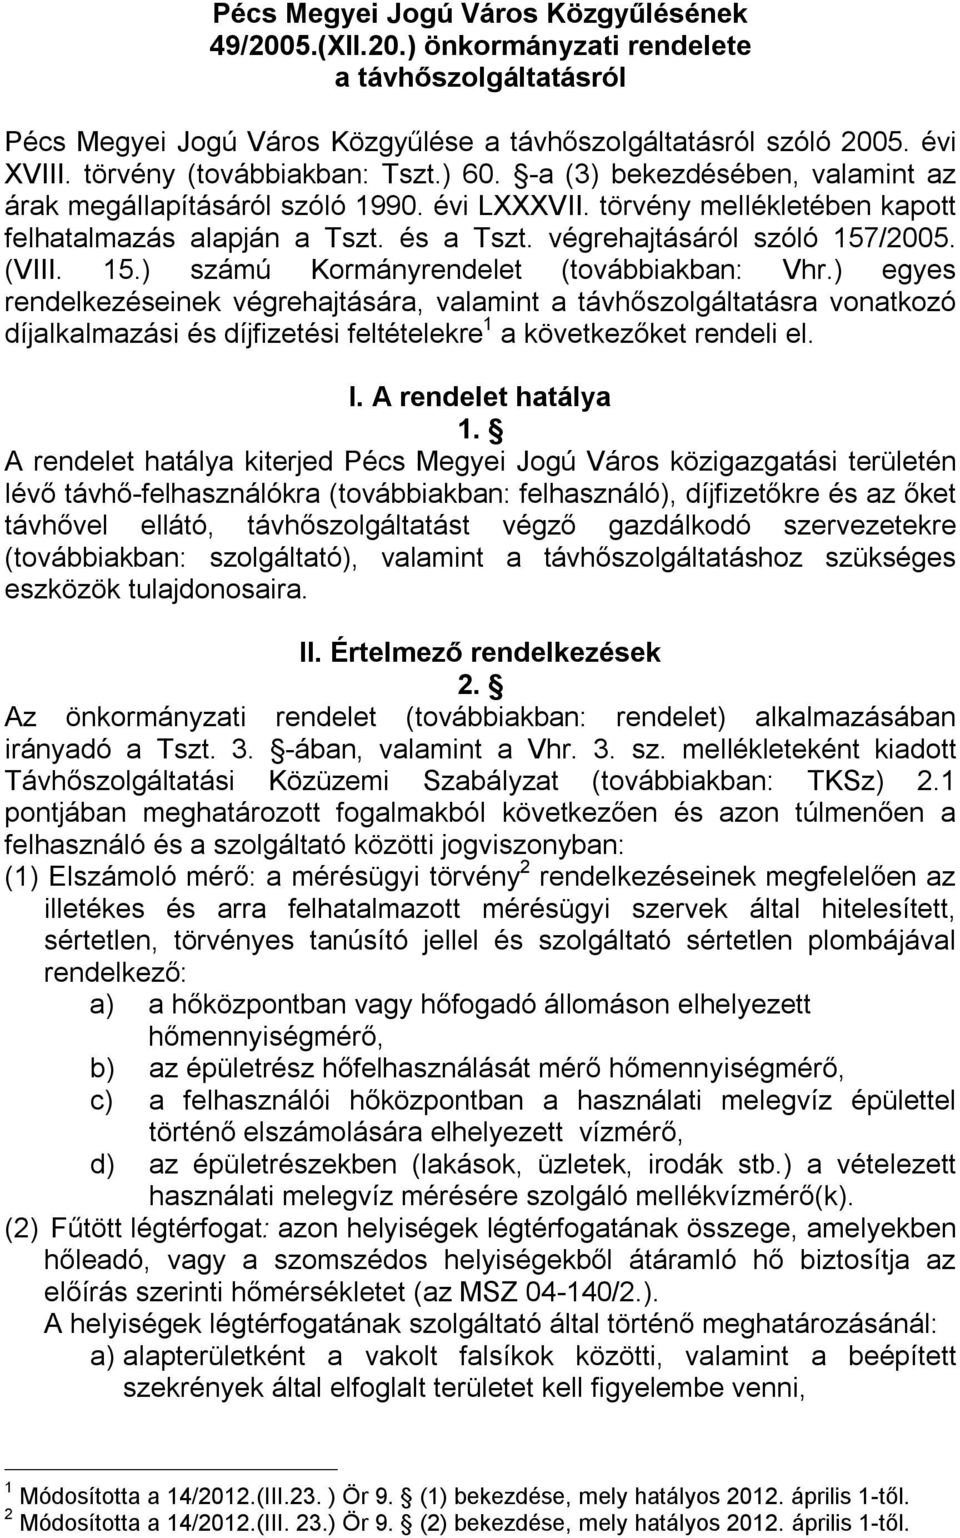 Pécs Megyei Jogú Város Közgyűlésének 49/2005.(XII.20.) önkormányzati  rendelete a távhőszolgáltatásról - PDF Ingyenes letöltés